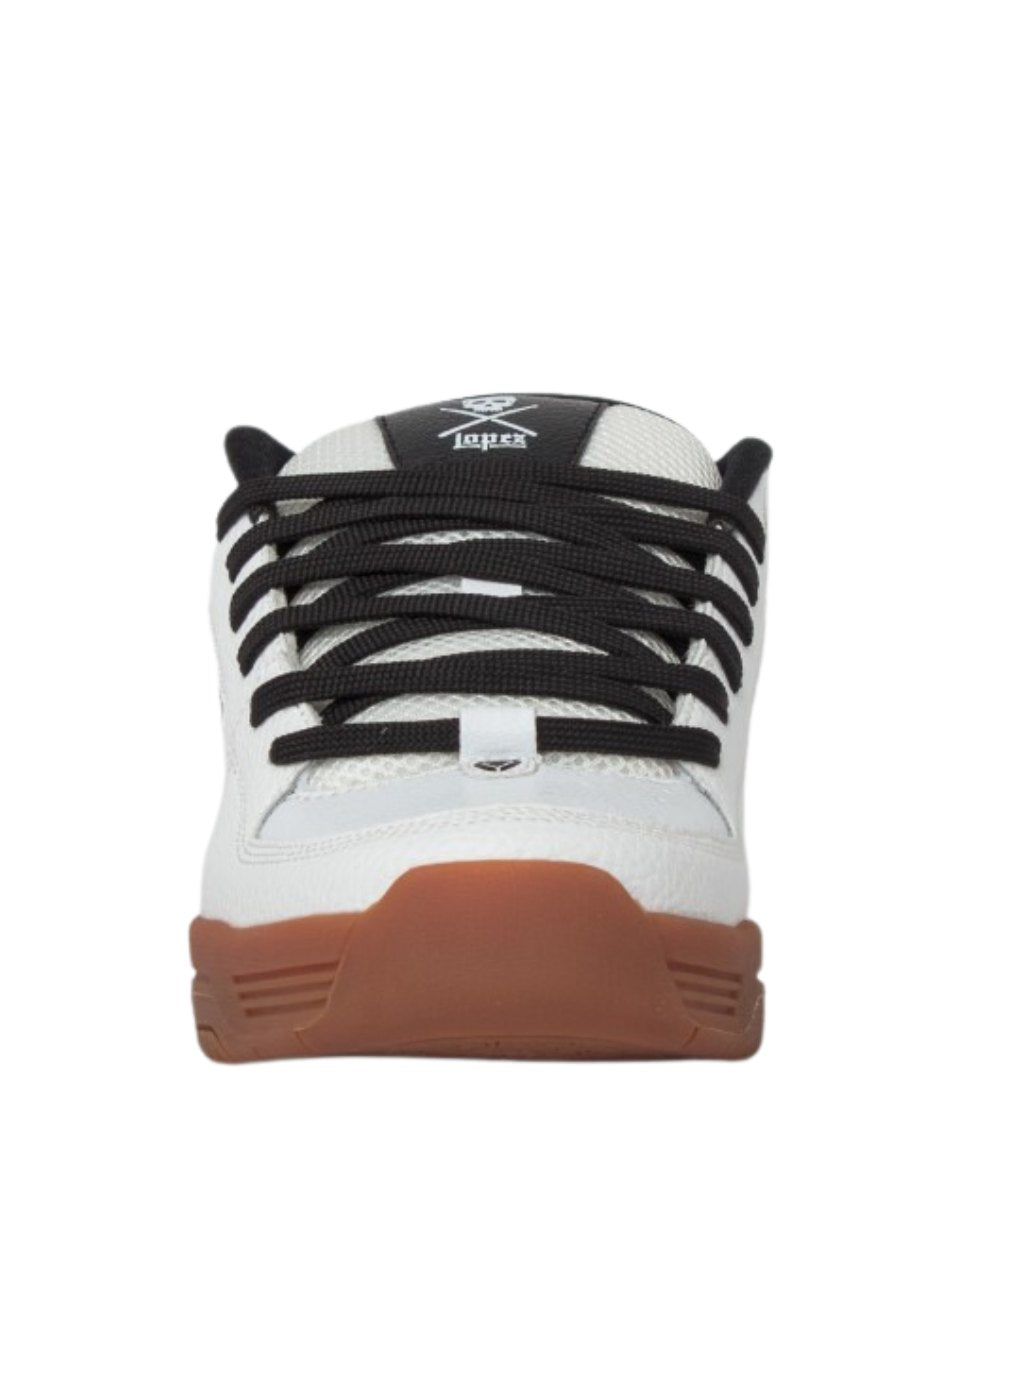 Chaussures de skate Circa 805 blanc/gomme | Baskets | Chaussure | Collection_Zalando | Nouveaux produits | Produits les plus récents | Produits les plus vendus | surfdevils.com